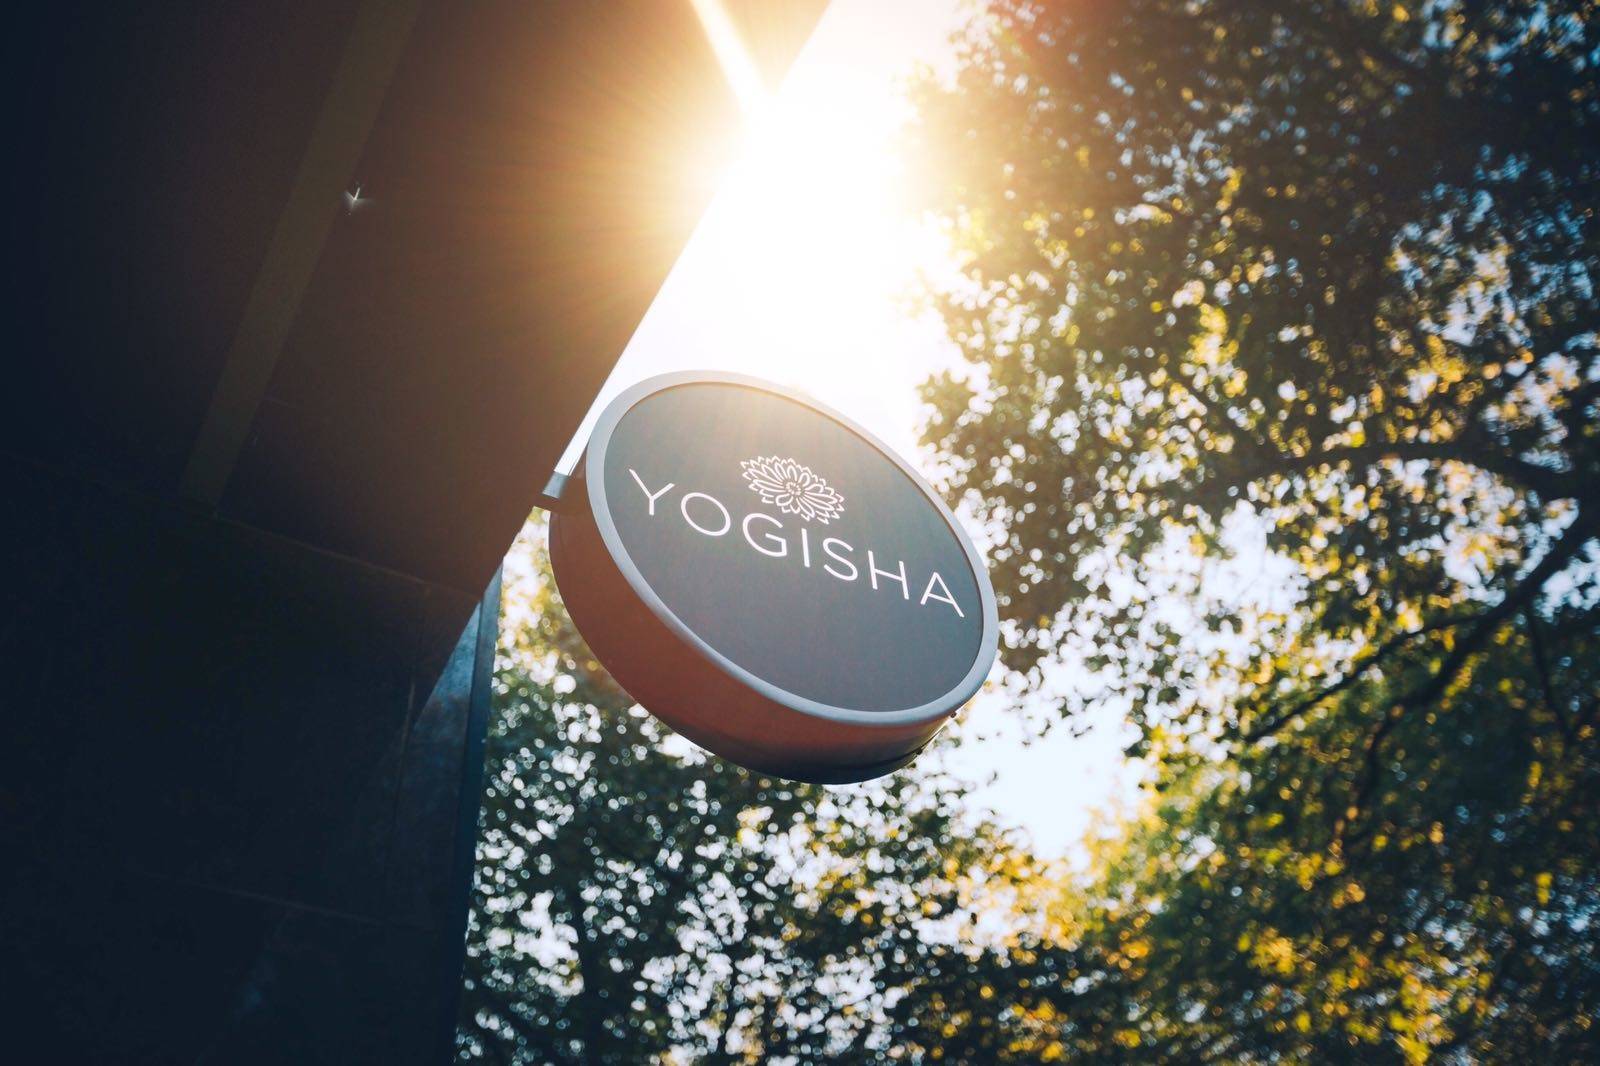 Yoga Paws - Yogisha Amsterdam